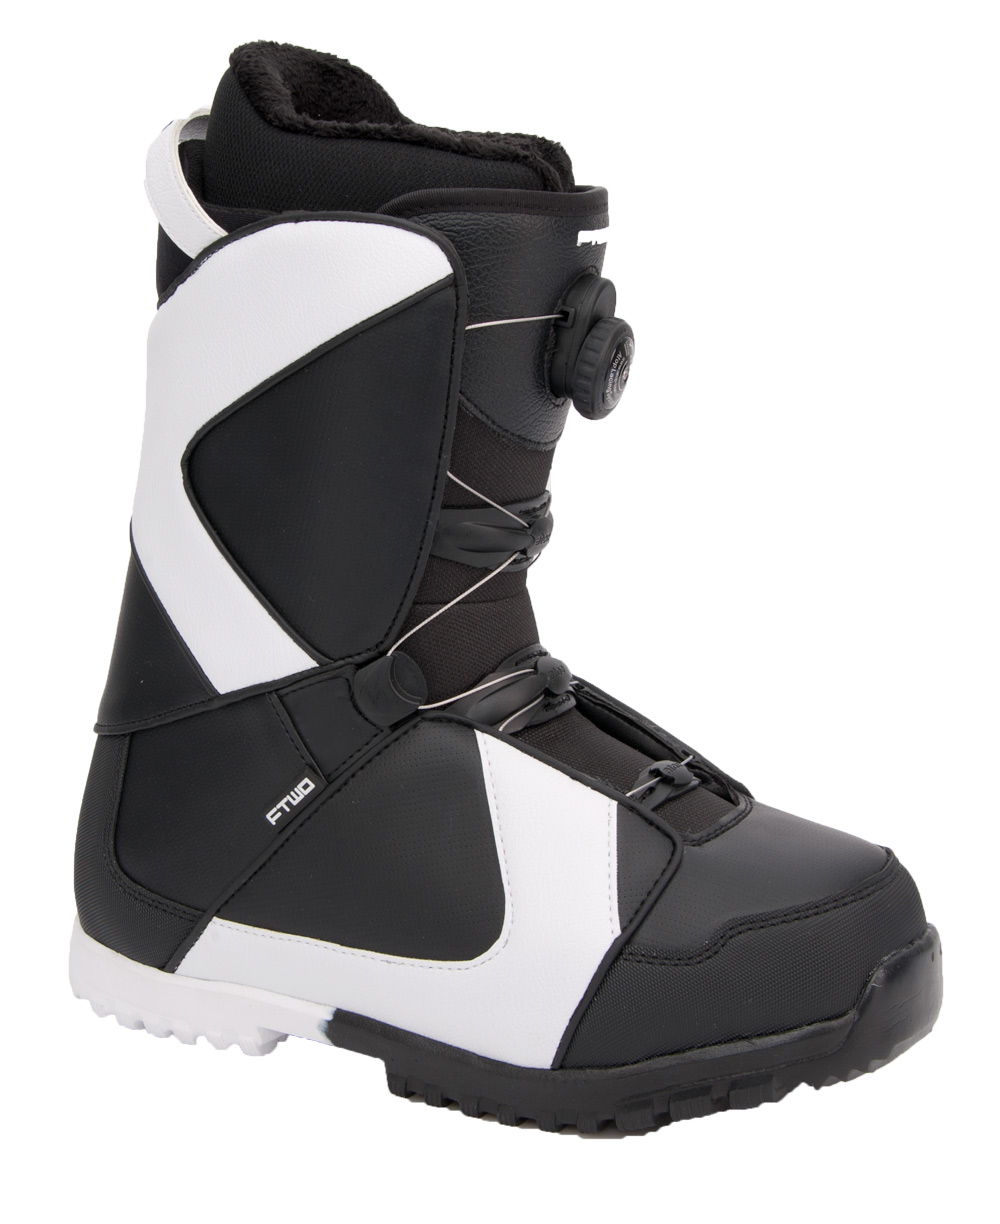 Ботинки сноубордические F2 Air размер 30,0 black/black  фото 